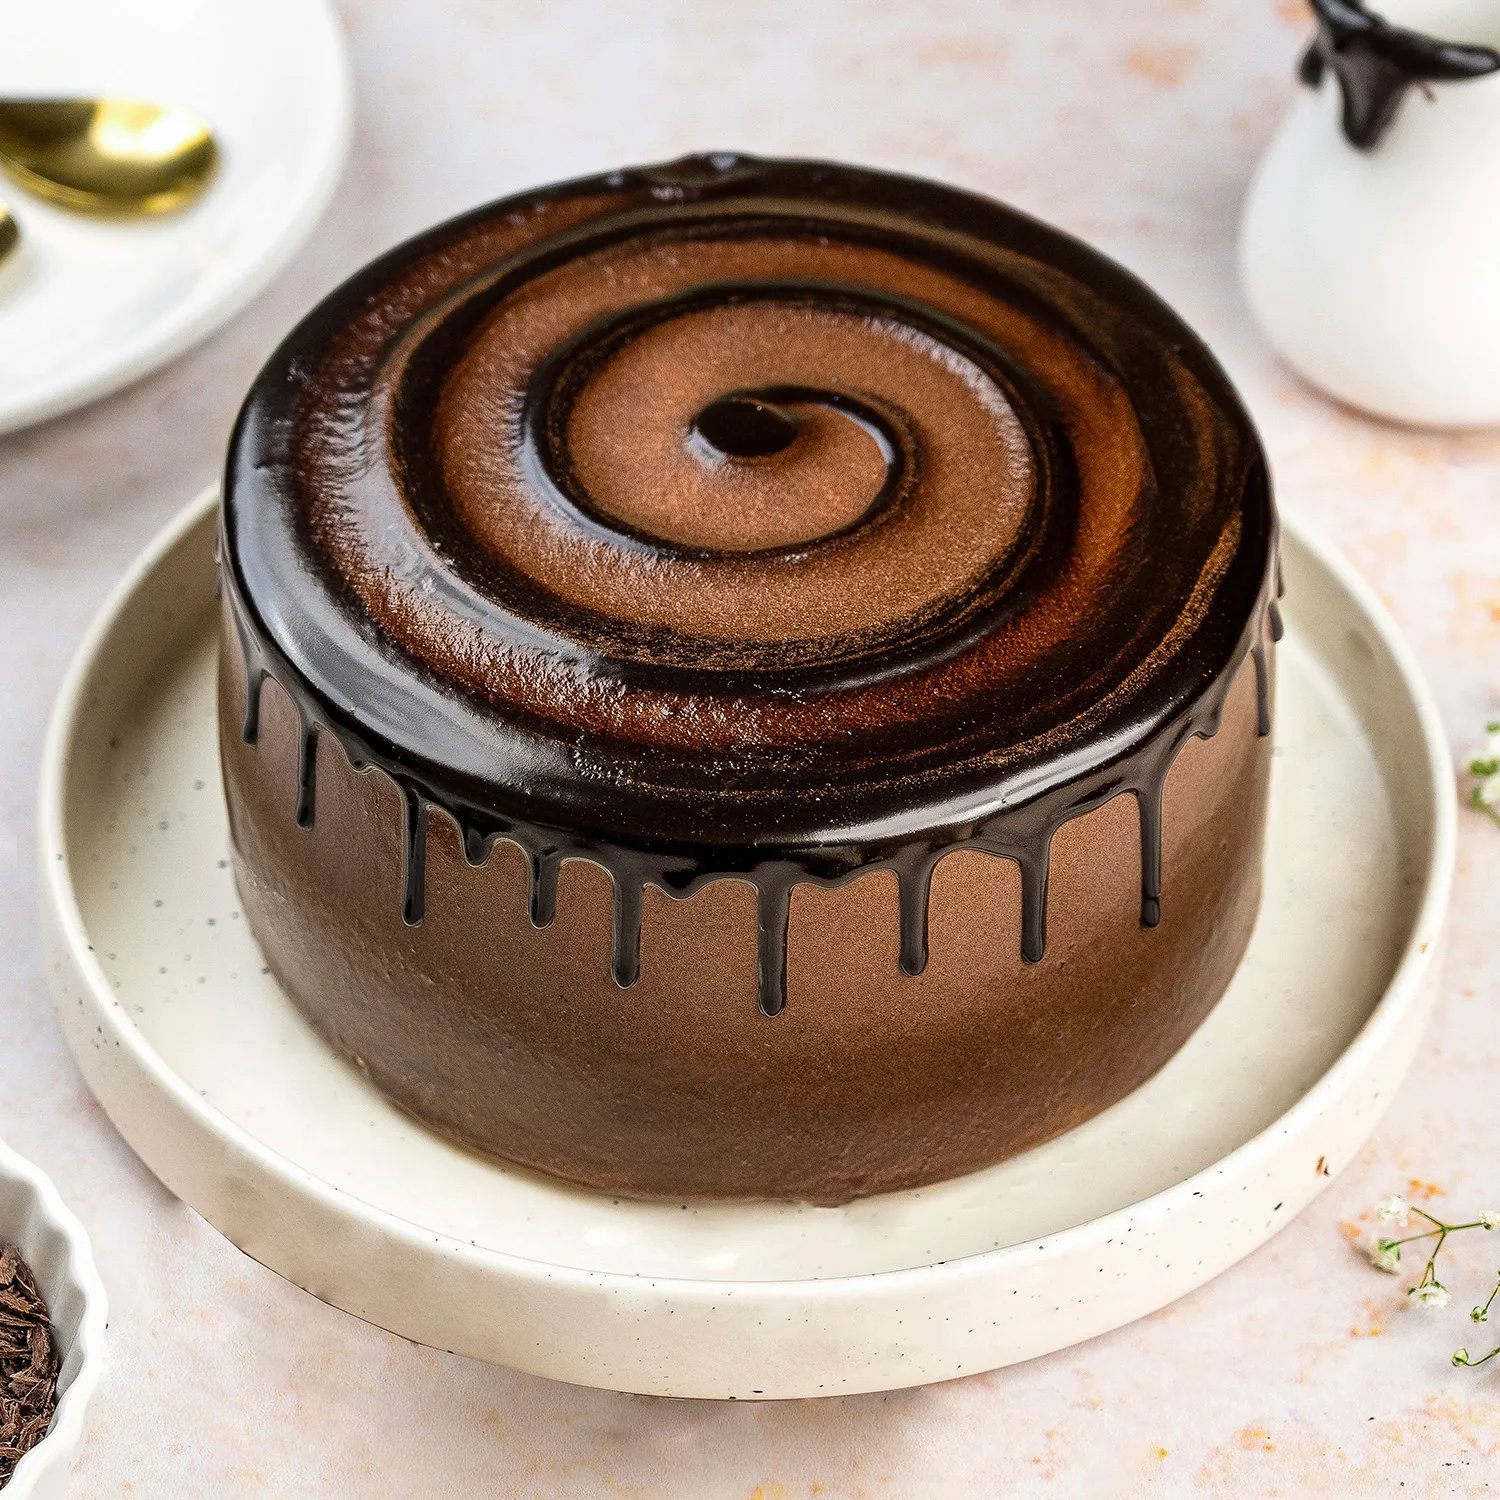 Extravagant Chocolate Cream Cake - 2 KG